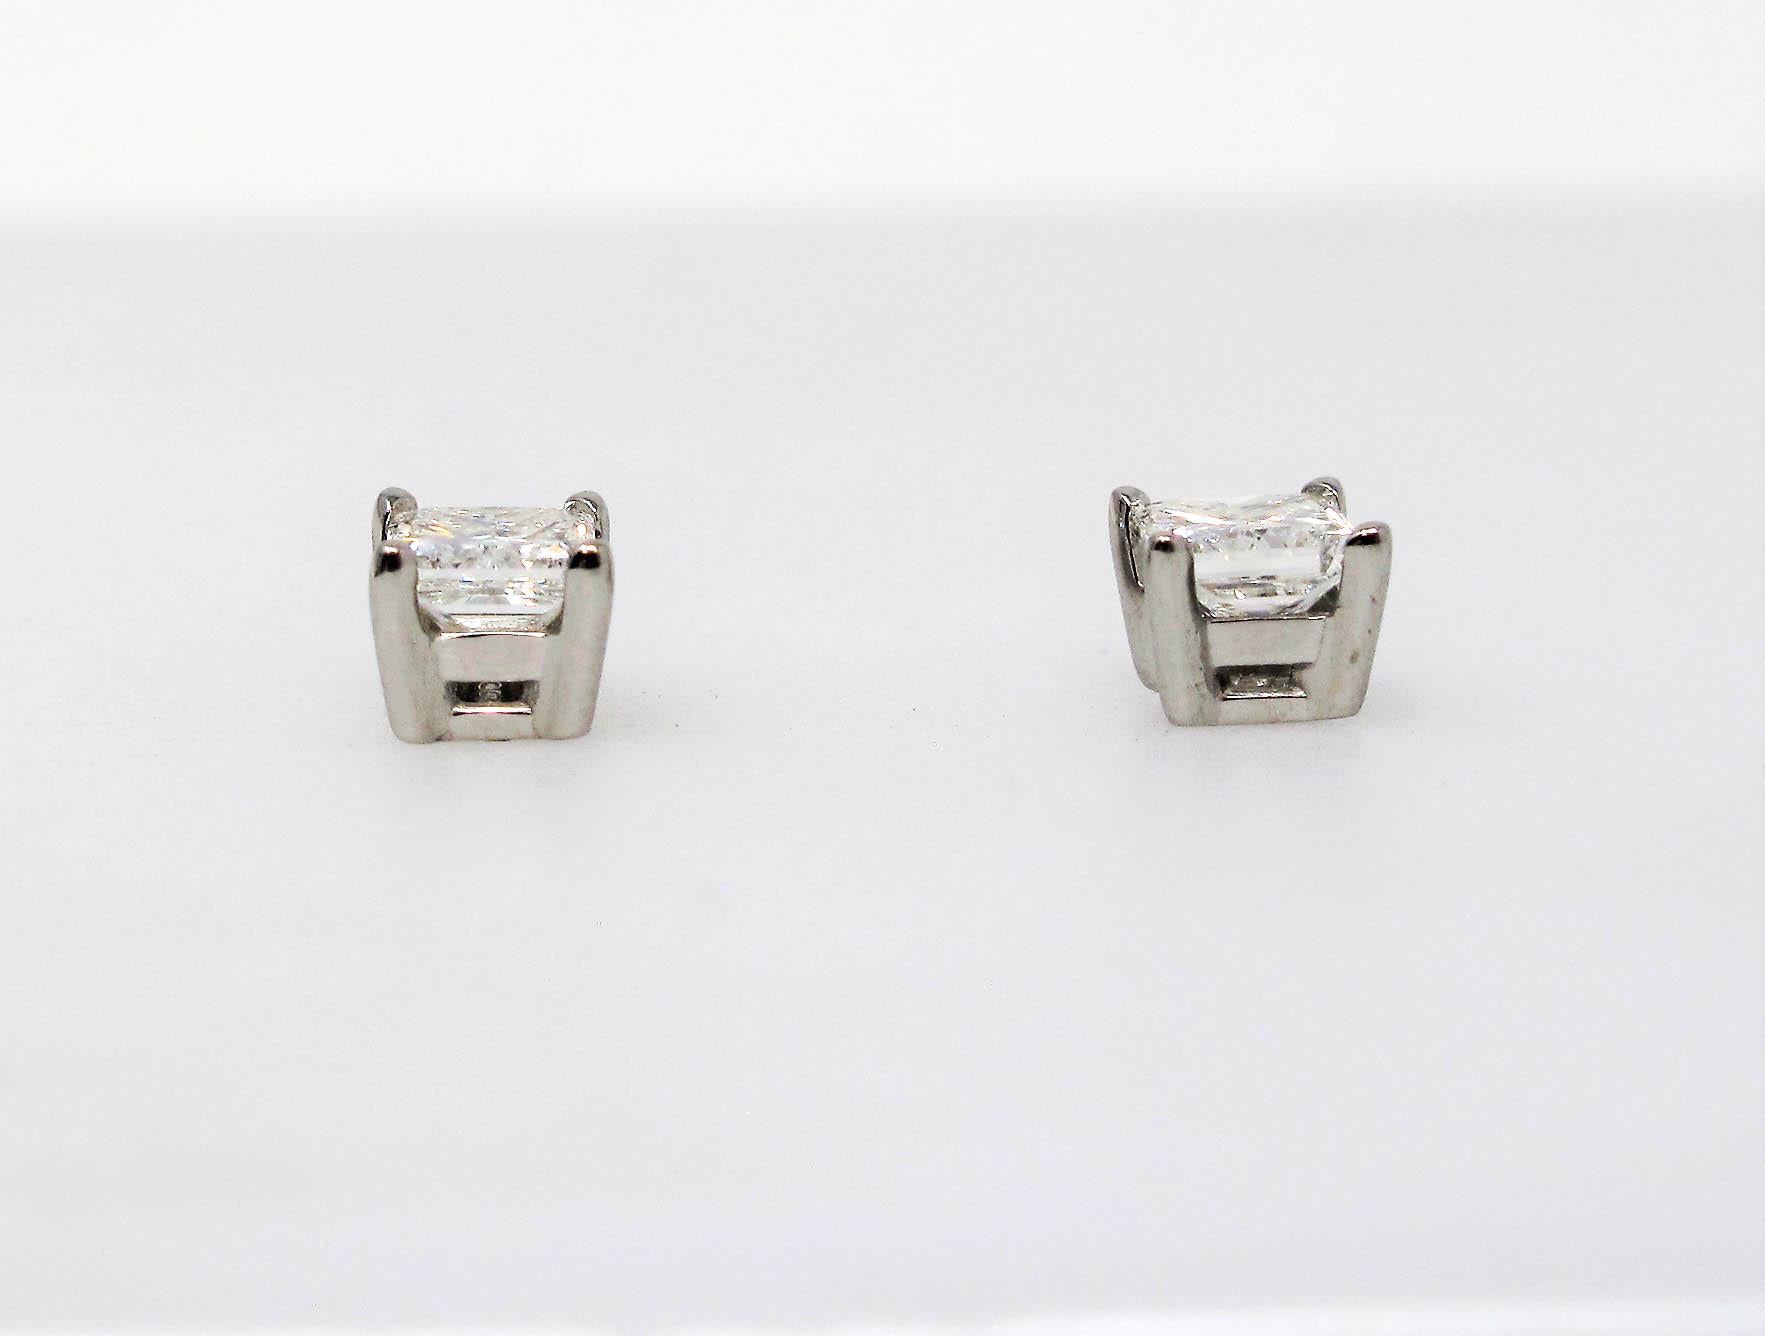 1.02 Carat Total Princess Cut Solitaire Diamond Stud Earrings in Platinum VS1 4